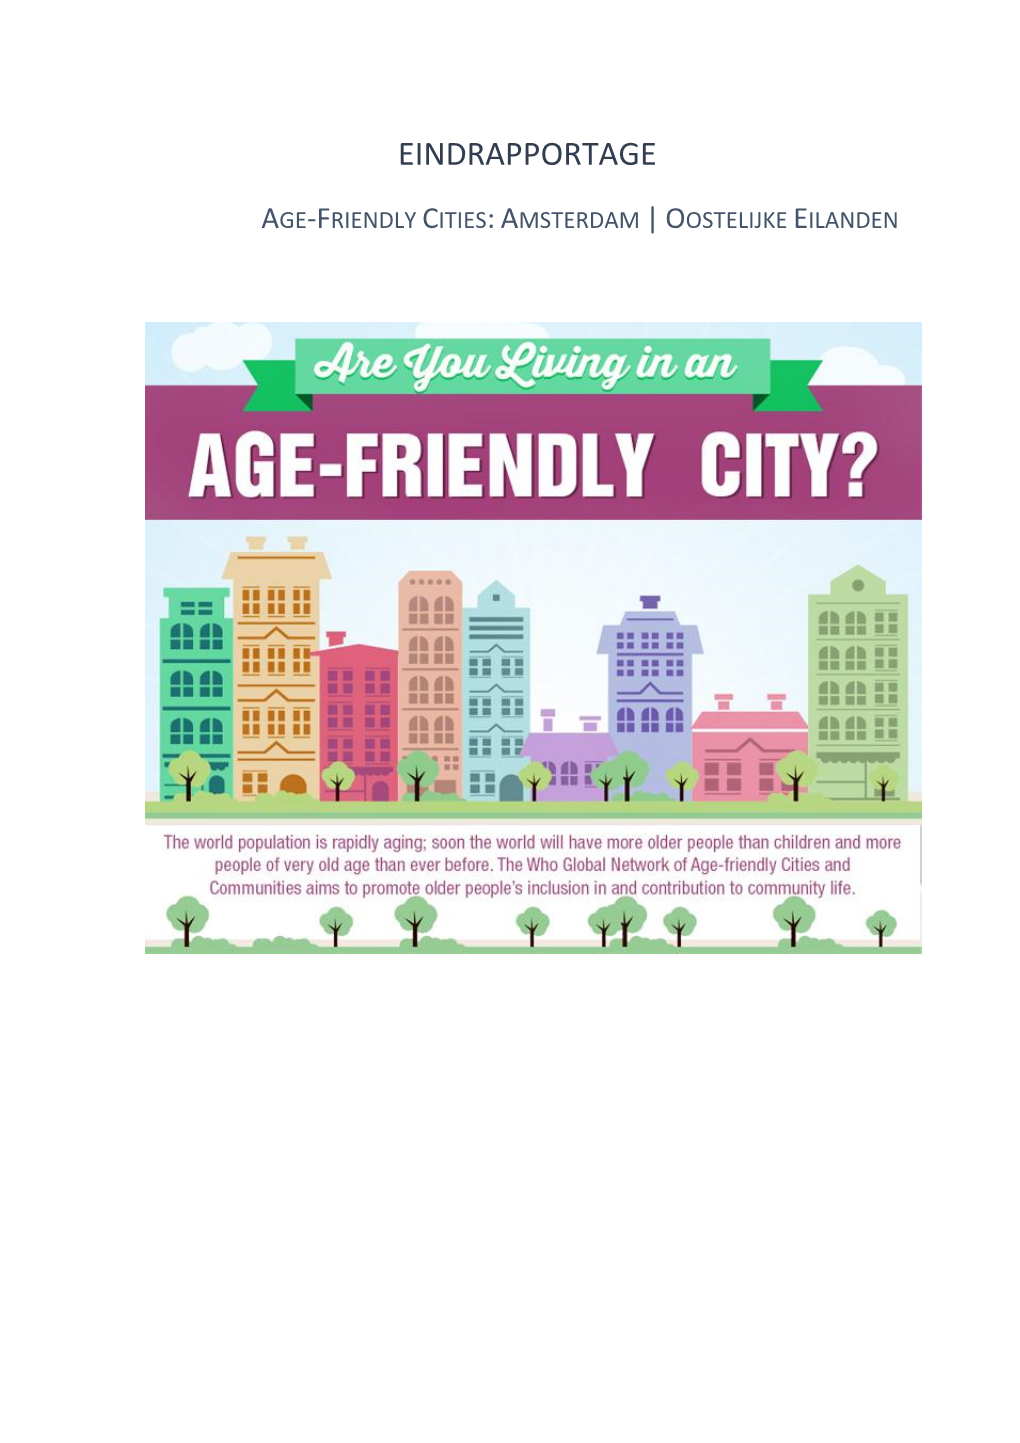 Eindrapportage Age-Friendly Cities: Amsterdam | Oostelijke Eilanden